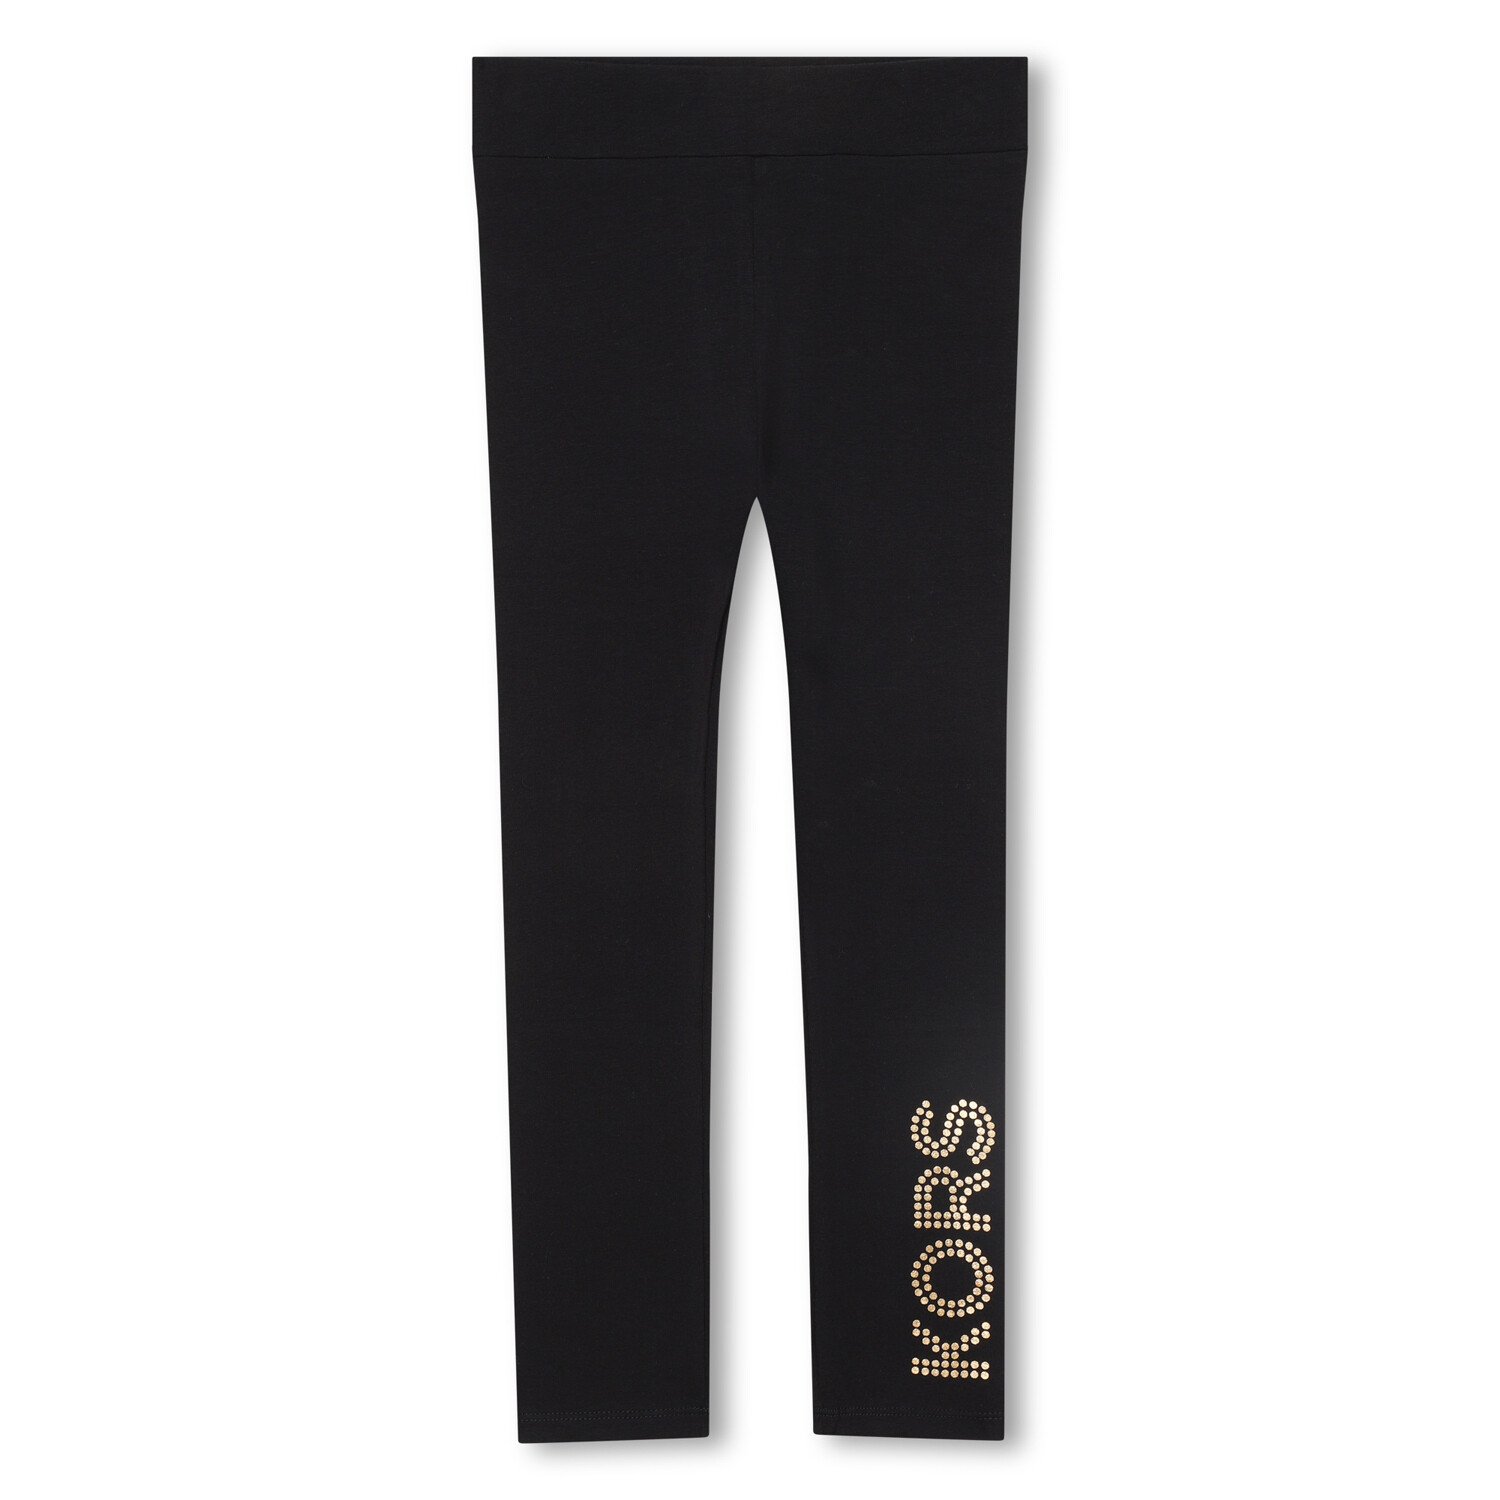 Michael Kors Girls R14161 09B Leggings Black - Kids Clothing